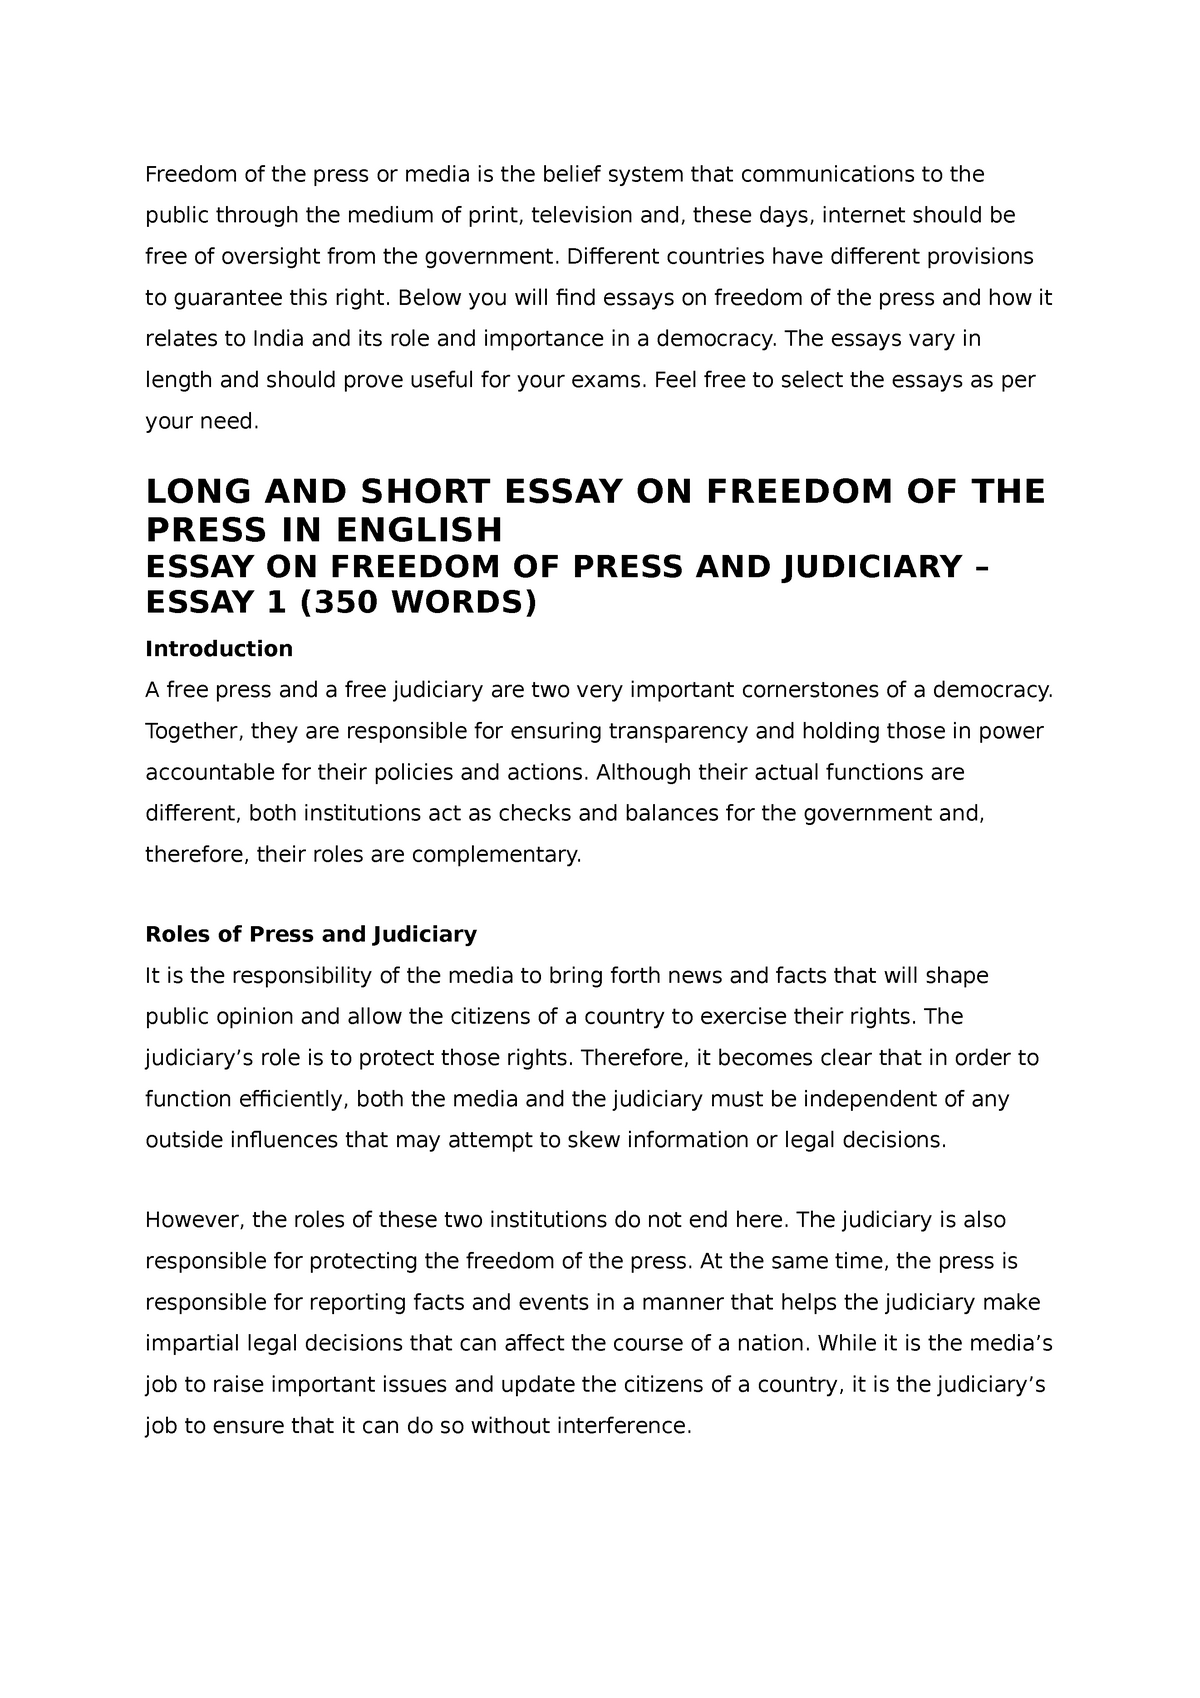 freedom of media essay in english